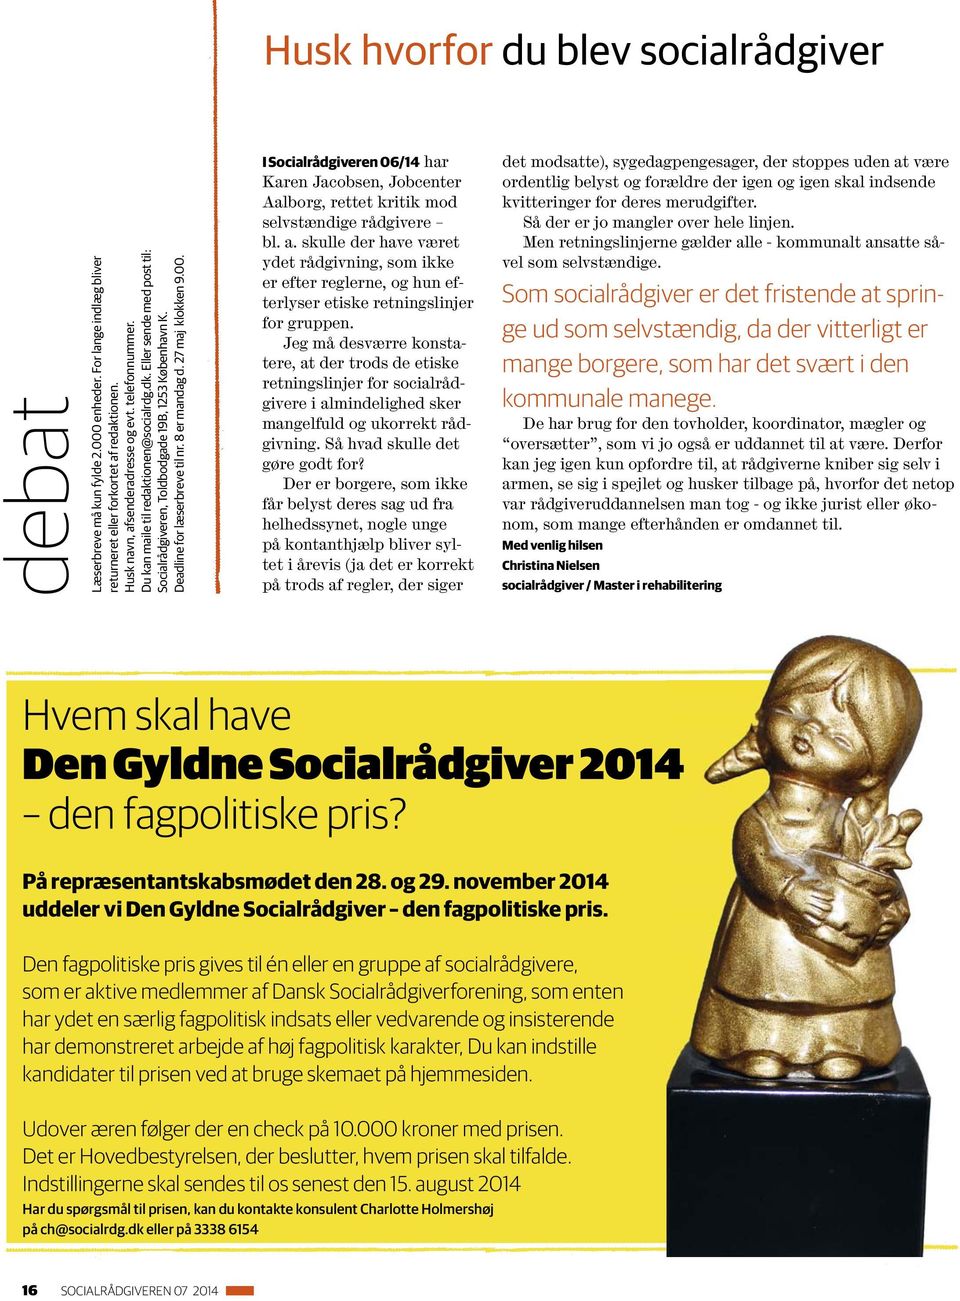 I Socialrådgiveren 06/14 har Karen Jacobsen, Jobcenter Aalborg, rettet kritik mod selvstændige rådgivere bl. a.